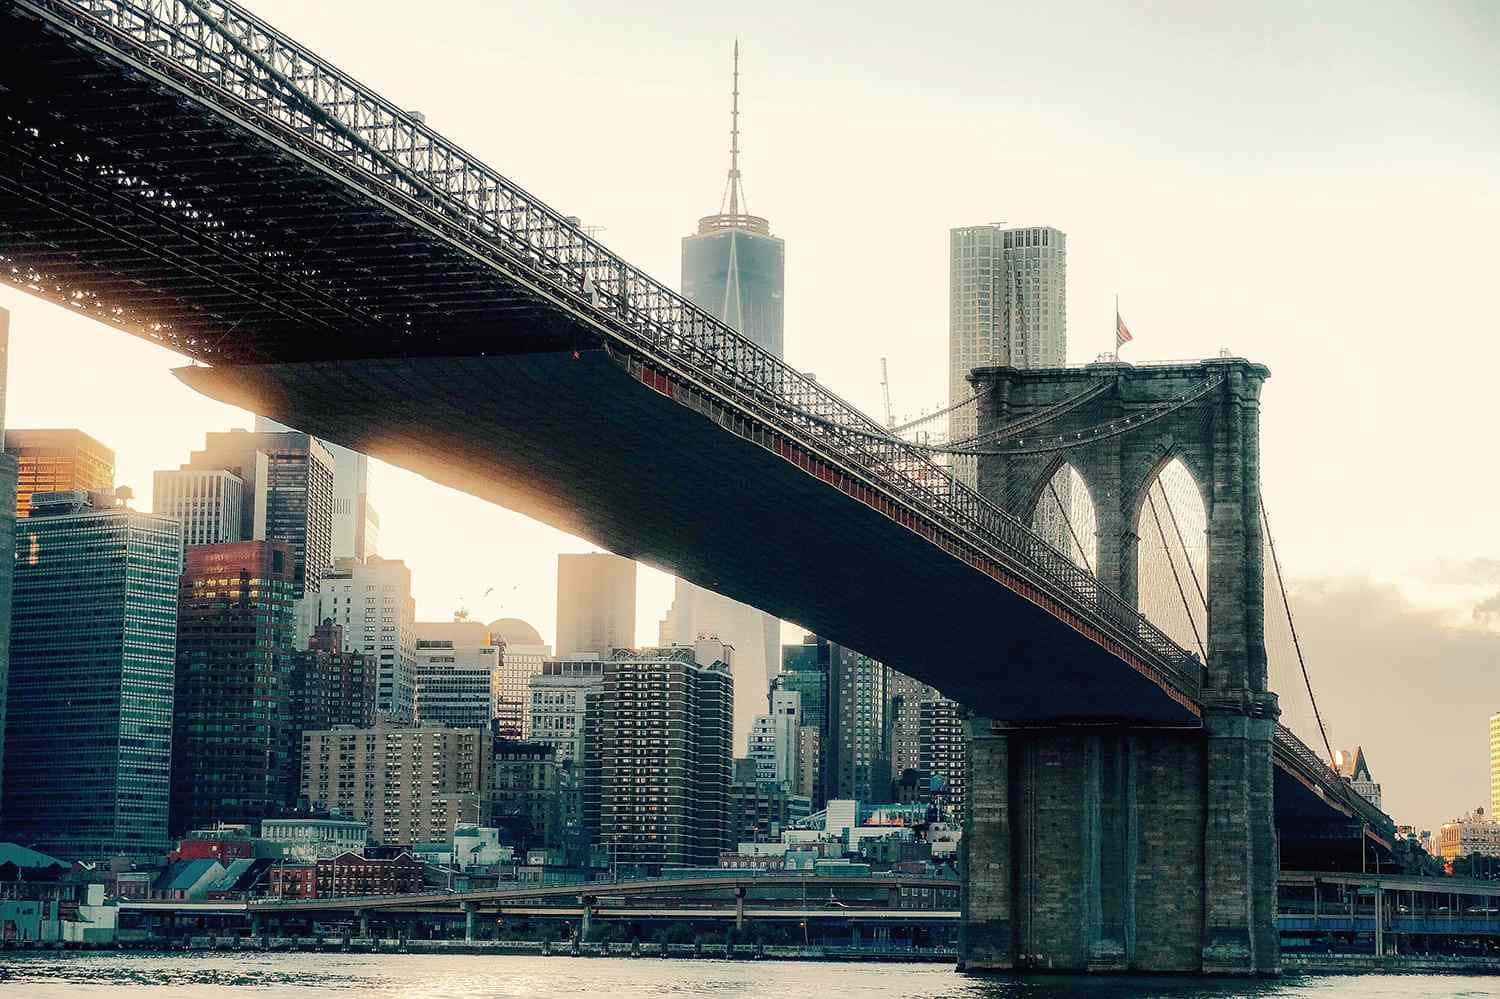 Fondode Pantalla Del Puente De Brooklyn En Ángulo Bajo, El Mejor Fondo De Nueva York.